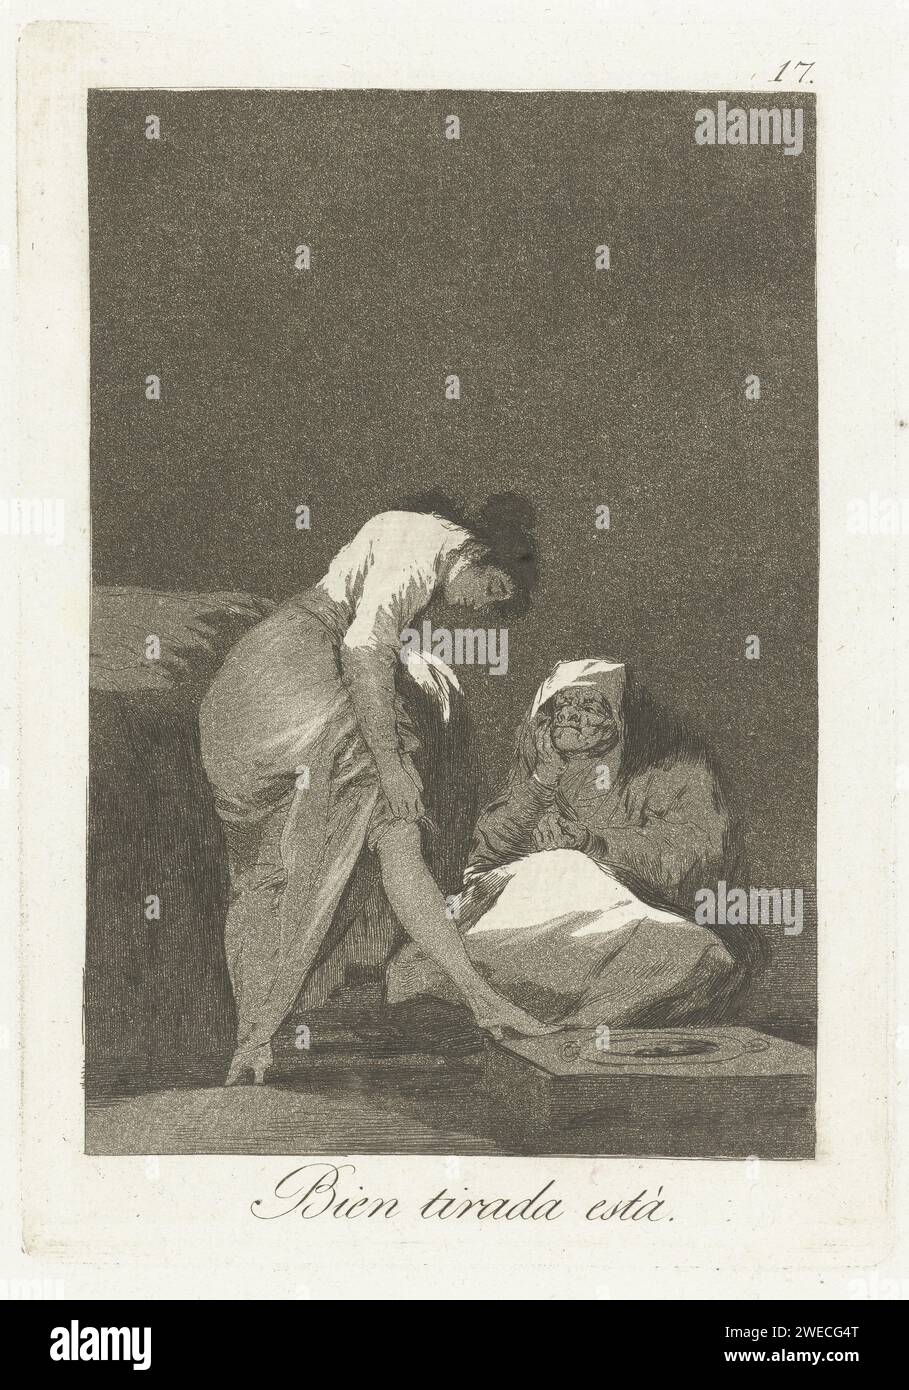 E' ben attratto, Francisco de Goya, 1797 - 1799 stampa Una giovane donna le tira fuori le calze. Una donna anziana, seduta per terra, guarda. Diciassettesima stampa della serie Los Caprichos. Carta spagnola che incide vecchia donna. adolescente, giovane donna, fanciulla. indossare o togliere le calze. calze, calze (+ vestiti da donna). calze, calze (+ condimento, vestibilità) Foto Stock